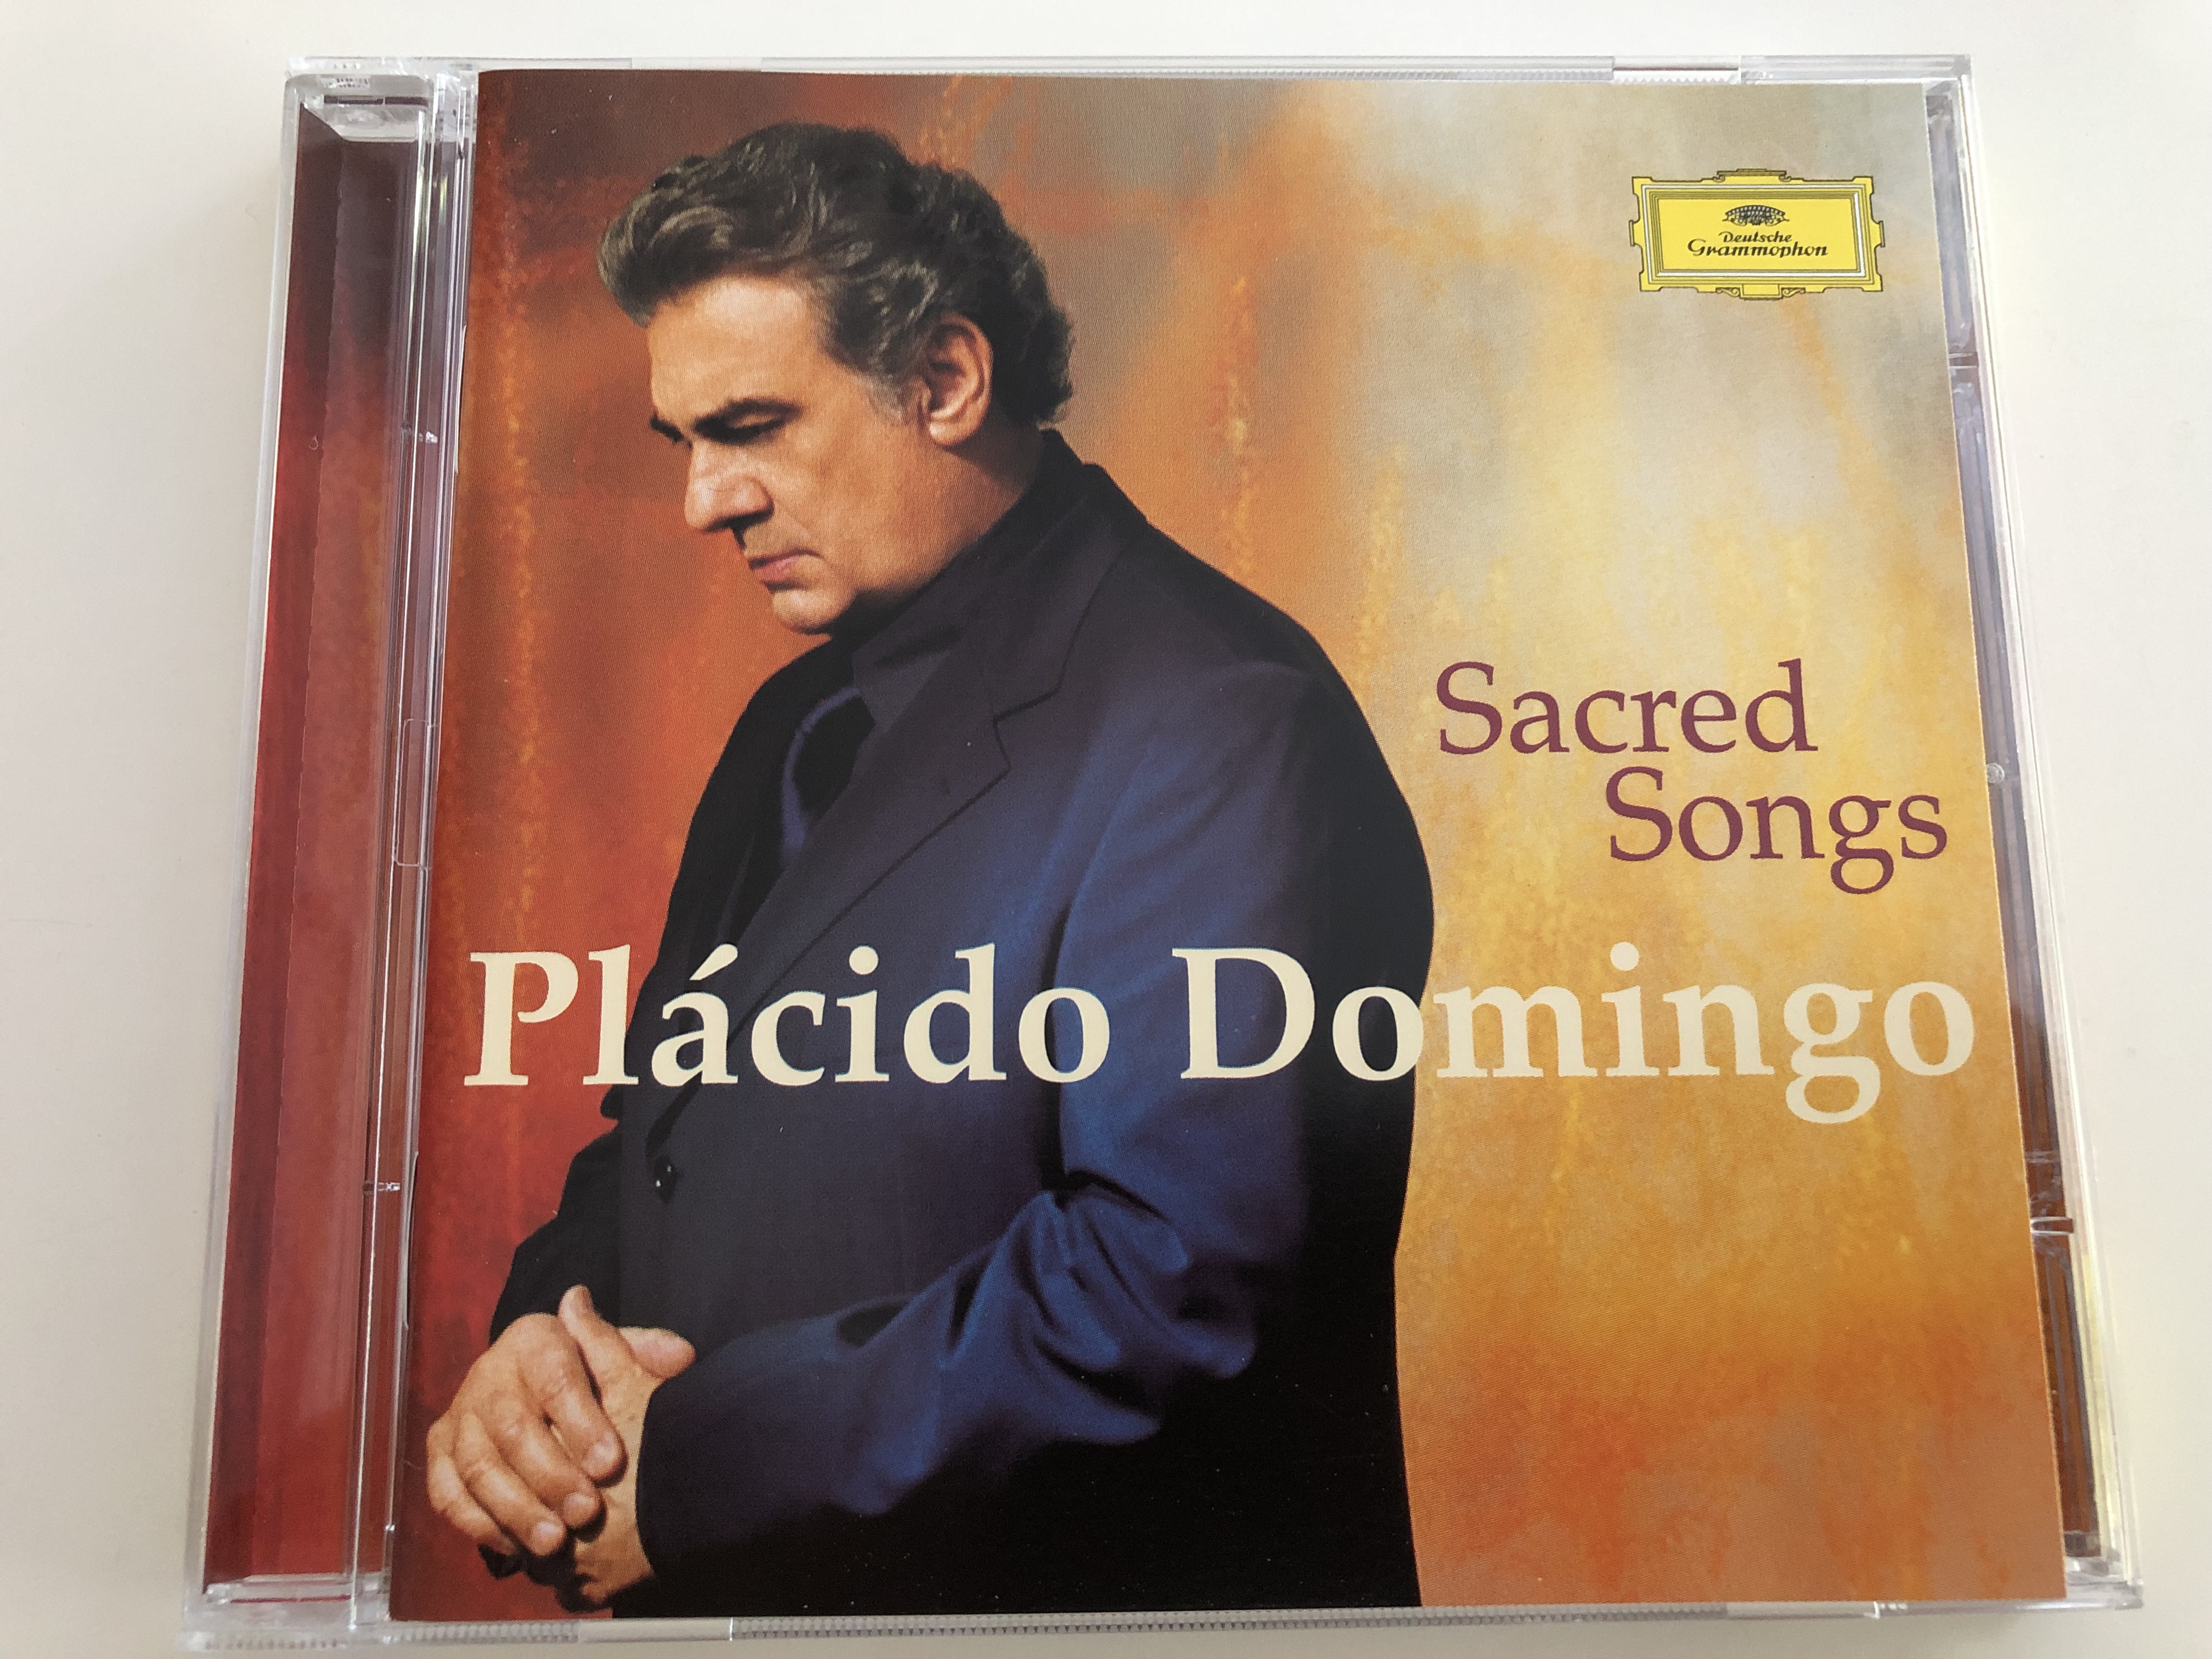 pl-cido-domingo-sacred-songs-coro-sinfonico-di-milano-chorus-master-romano-gandolfi-orchestra-sinfonica-di-milano-giuseppe-verdi-marcello-viotti-audio-cd-2002-1-.jpg